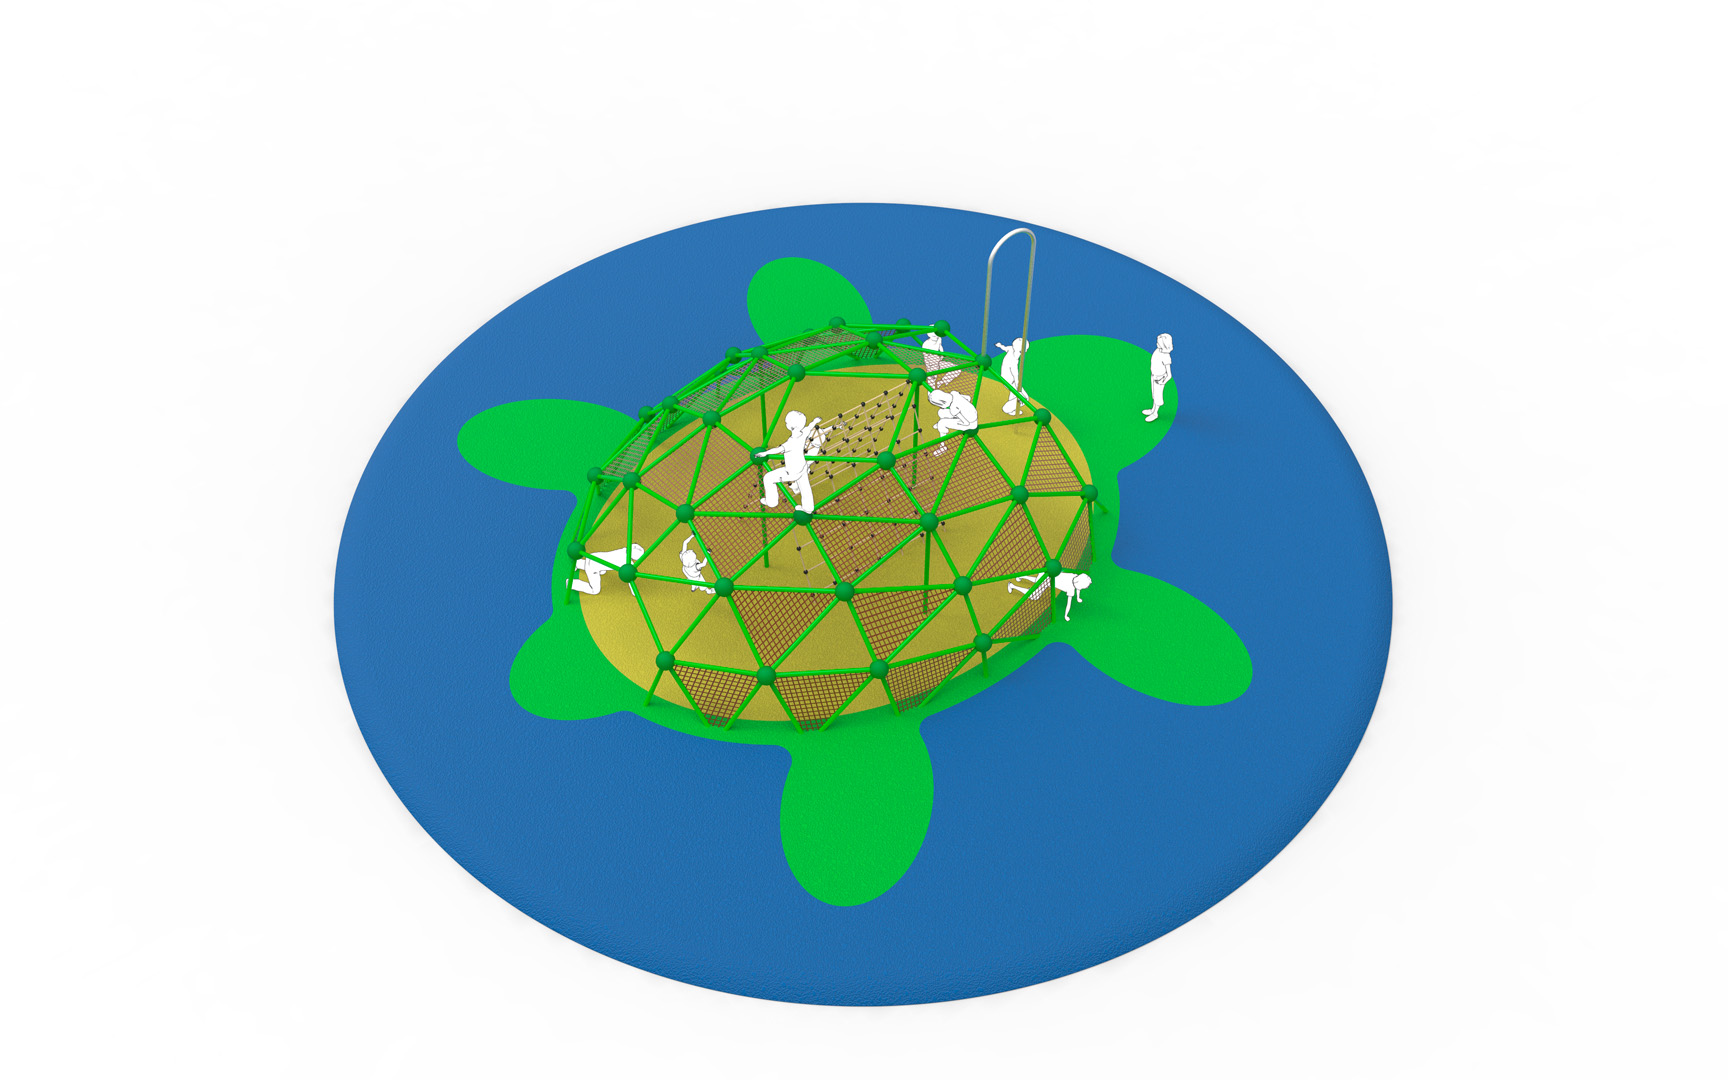 Turtle Net, o el juego simbólico